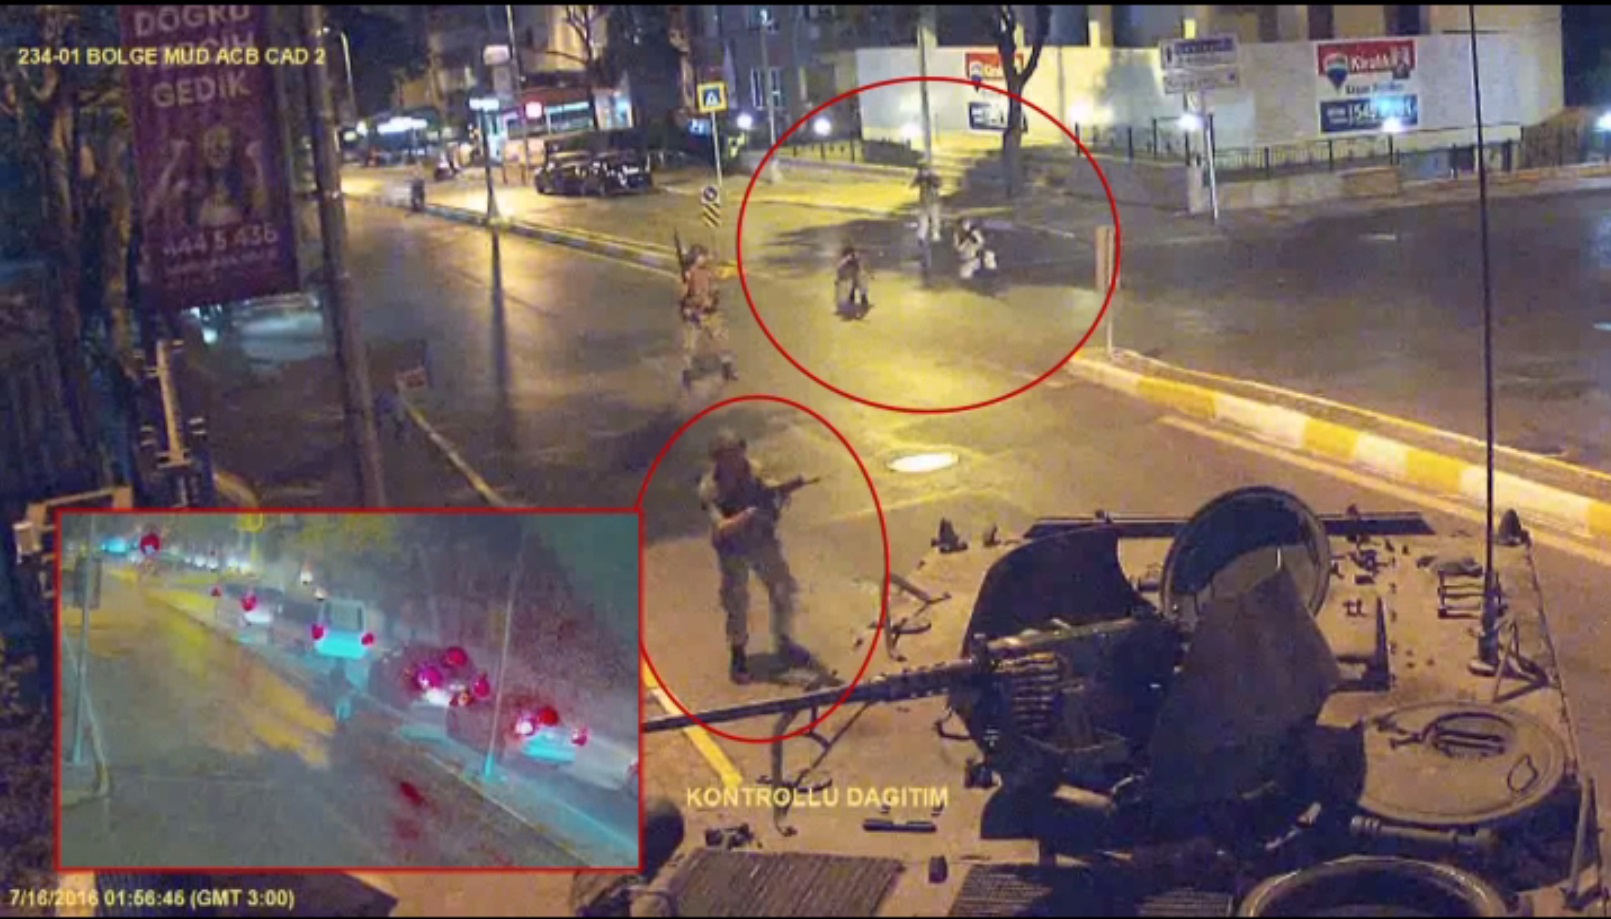 Kadıköy Acıbadem'deki Türk Telekom Müdürlüğü'ne girmeye çalışan darbeci askerler yoldan geçen servis araçlarına ateş açtı.